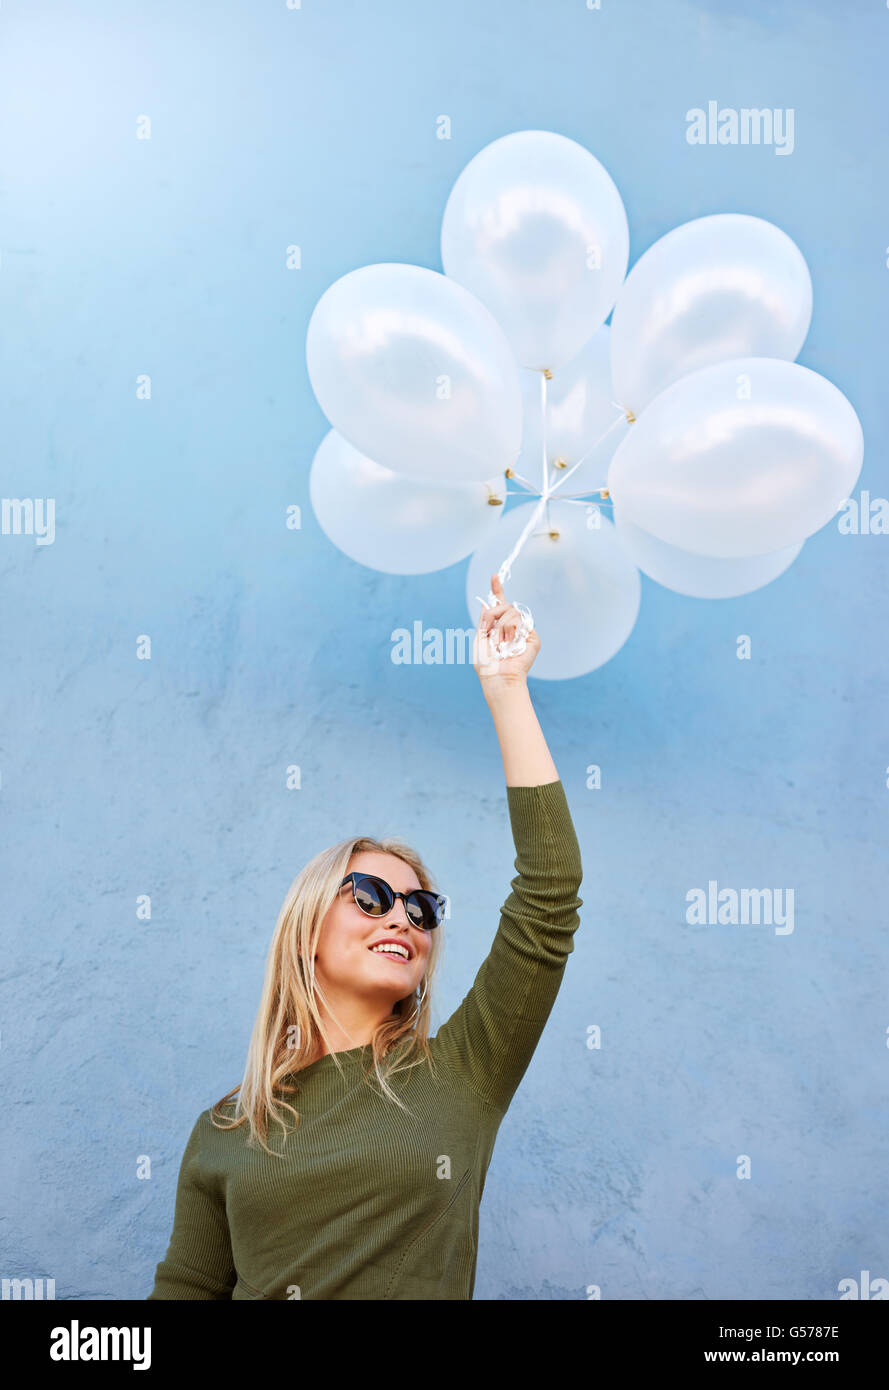 Coup de jeune joyeuse modèle féminin avec des ballons. Caucasian woman in sunglasses contre fond bleu. Banque D'Images